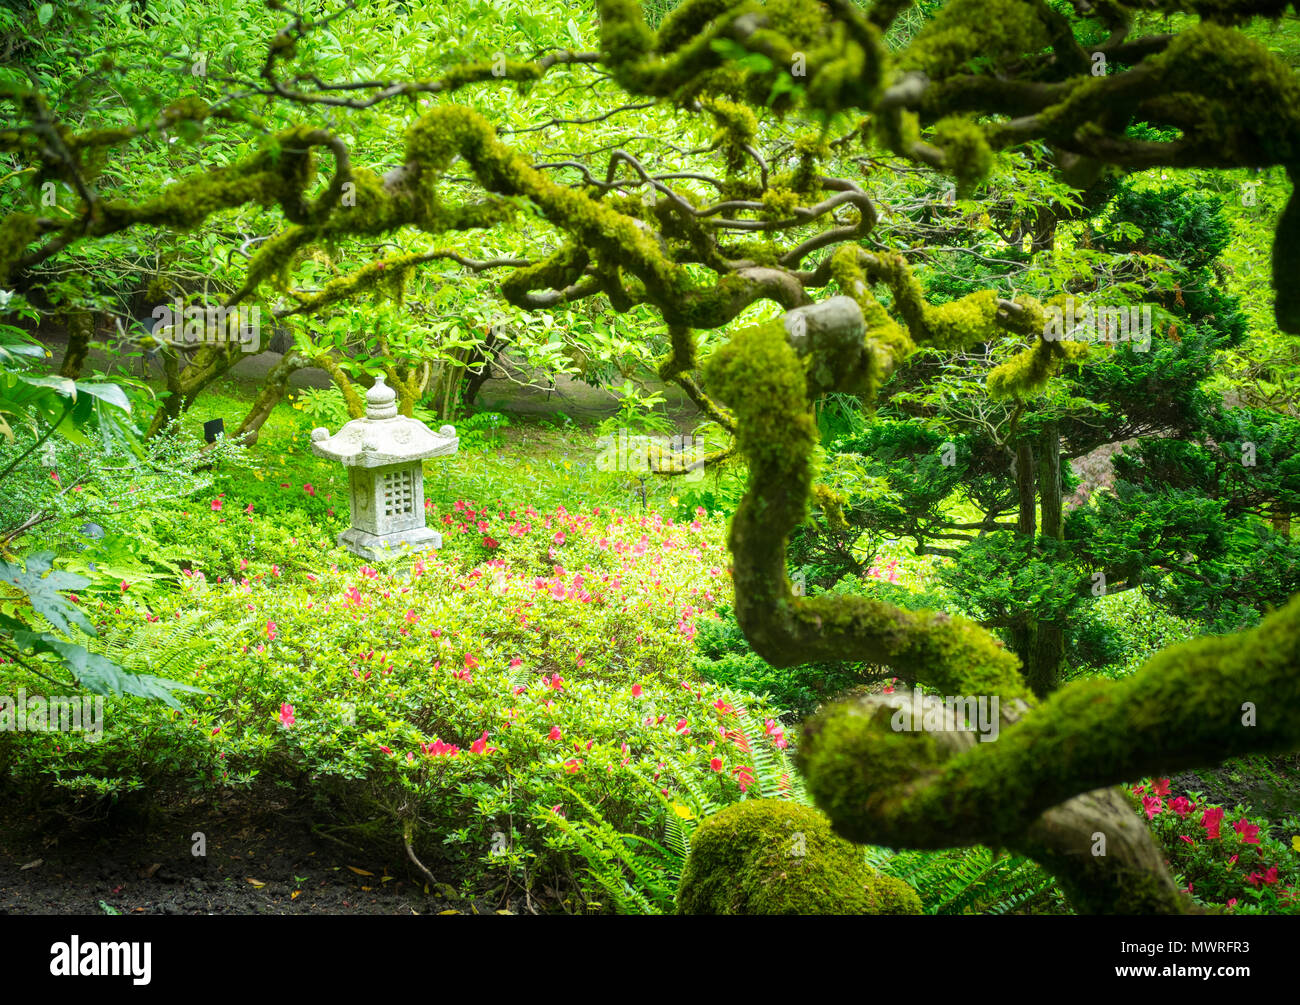 Las ramas cubiertas de musgo, arces japoneses, japoneses y una linterna de piedra adornan el Jardín Japonés en los Jardines Butchart en verano. El Brentwood Bay, Canadá. Foto de stock